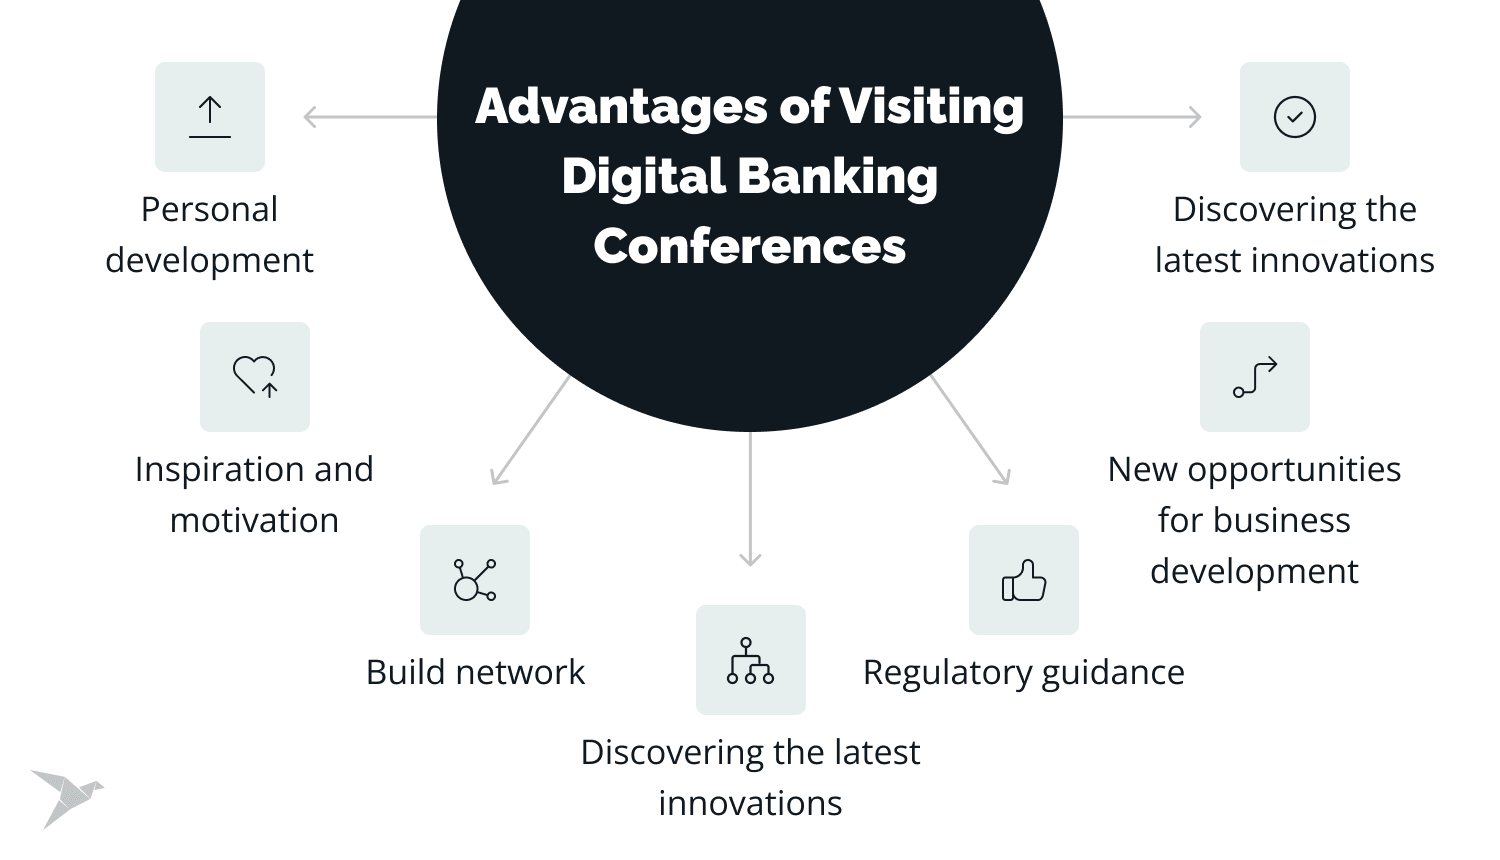 digital banking conferences